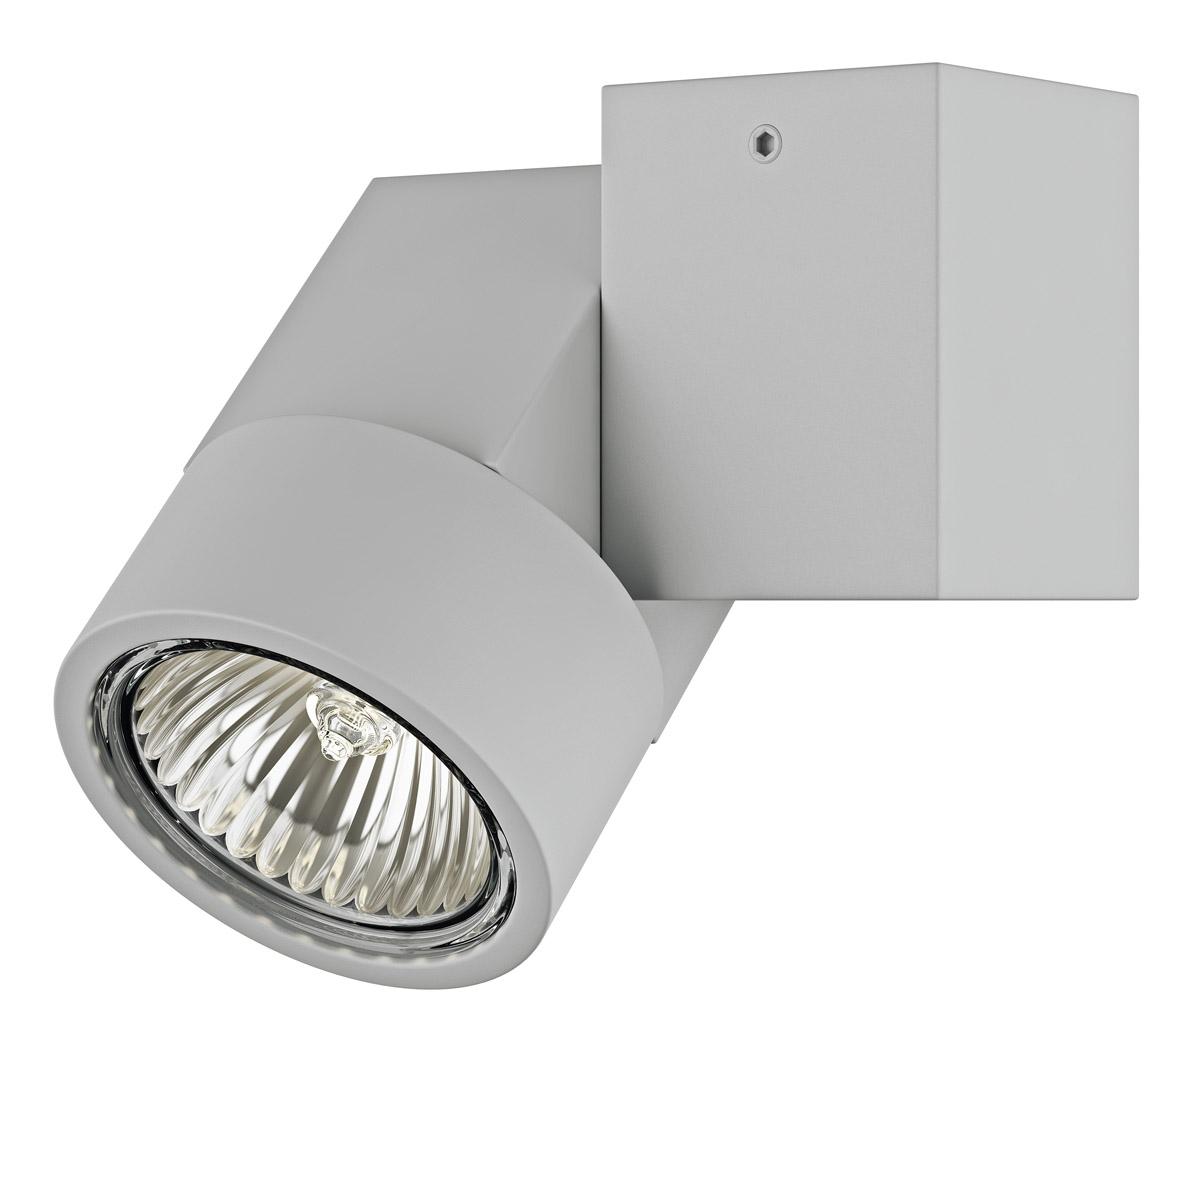 Светильник точечный накладной декоративный под заменяемые ГЛН или LED лампы Lightstar 051020 Illumo X1